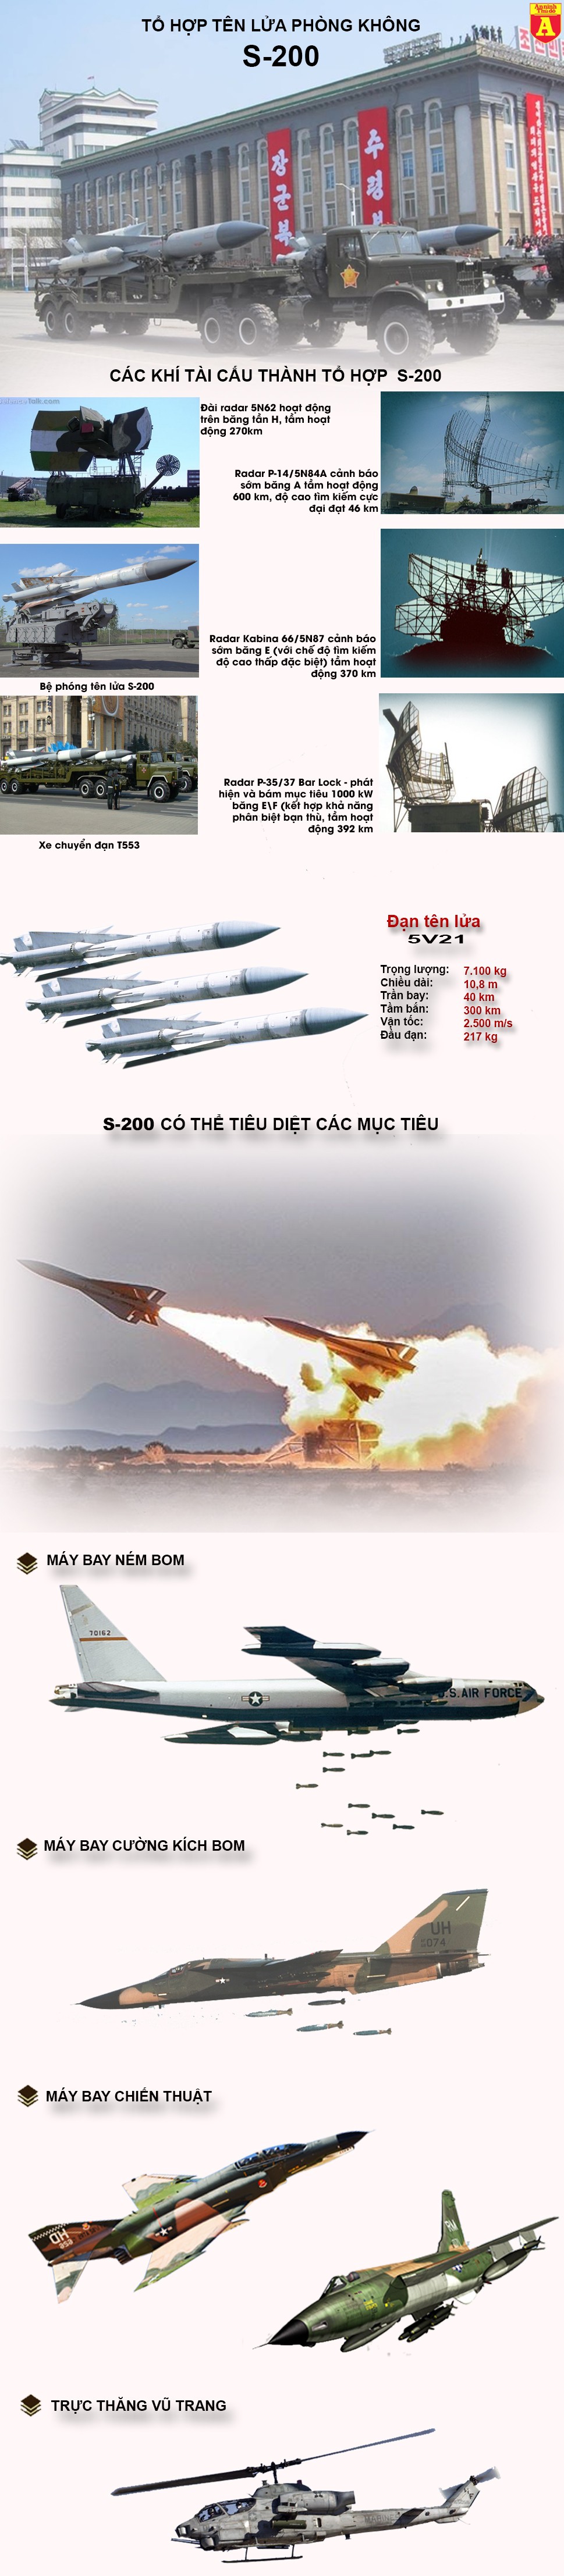 [Infographic] Lưới lửa phòng không Triều Tiên sẵn sàng "vít cổ" máy bay Mỹ - Hàn (4) ảnh 2